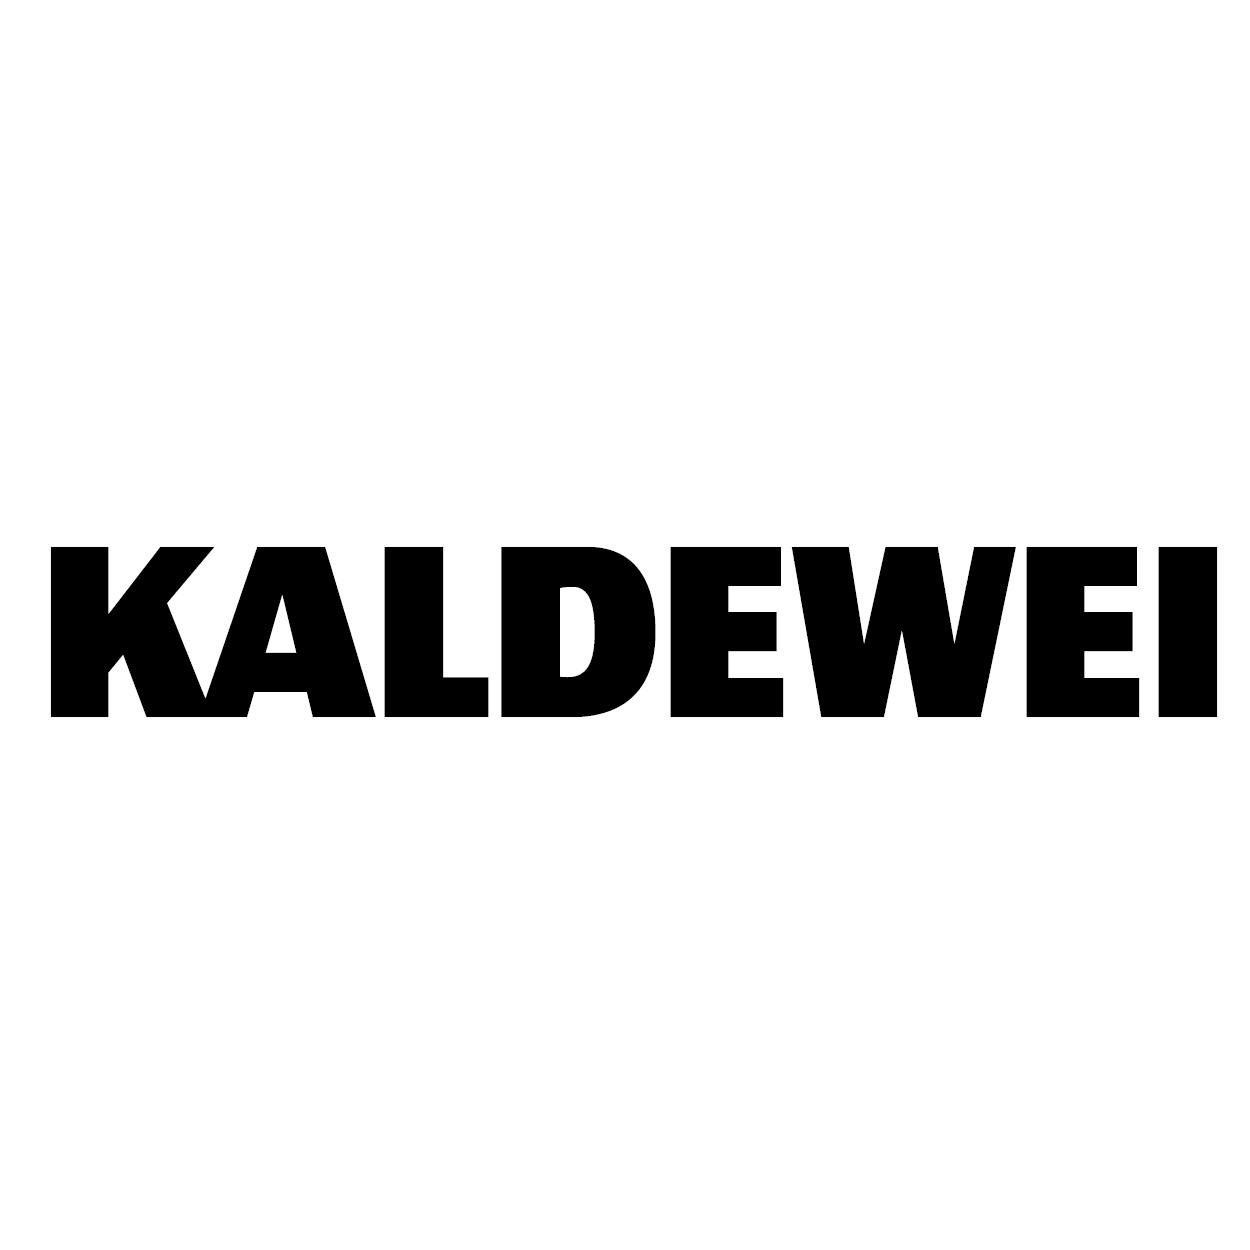 kaldewei-logo